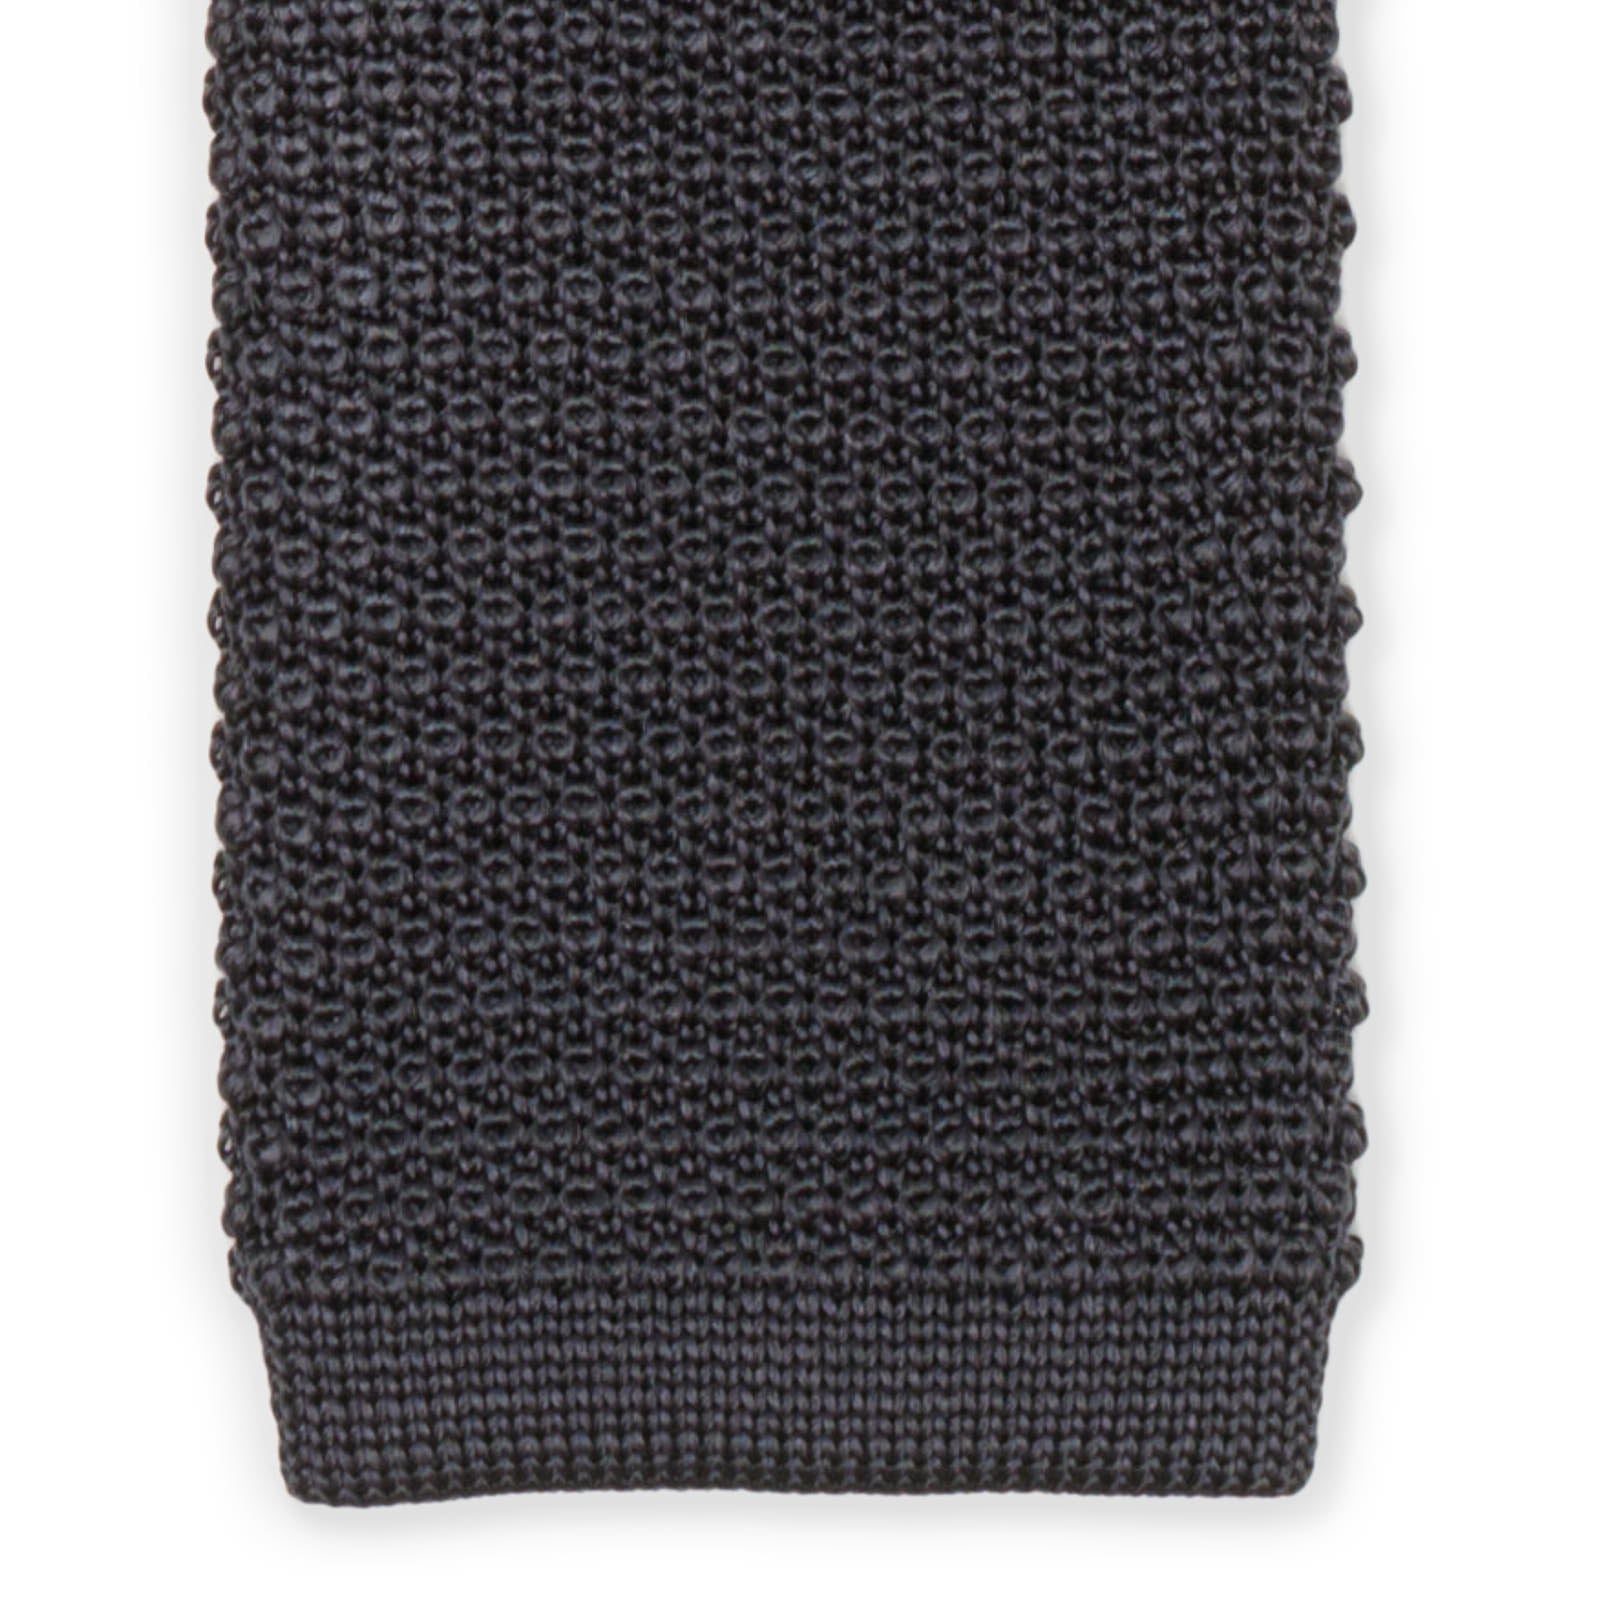 MATTABISCH Dark Gray Silk Knit Tie NEW